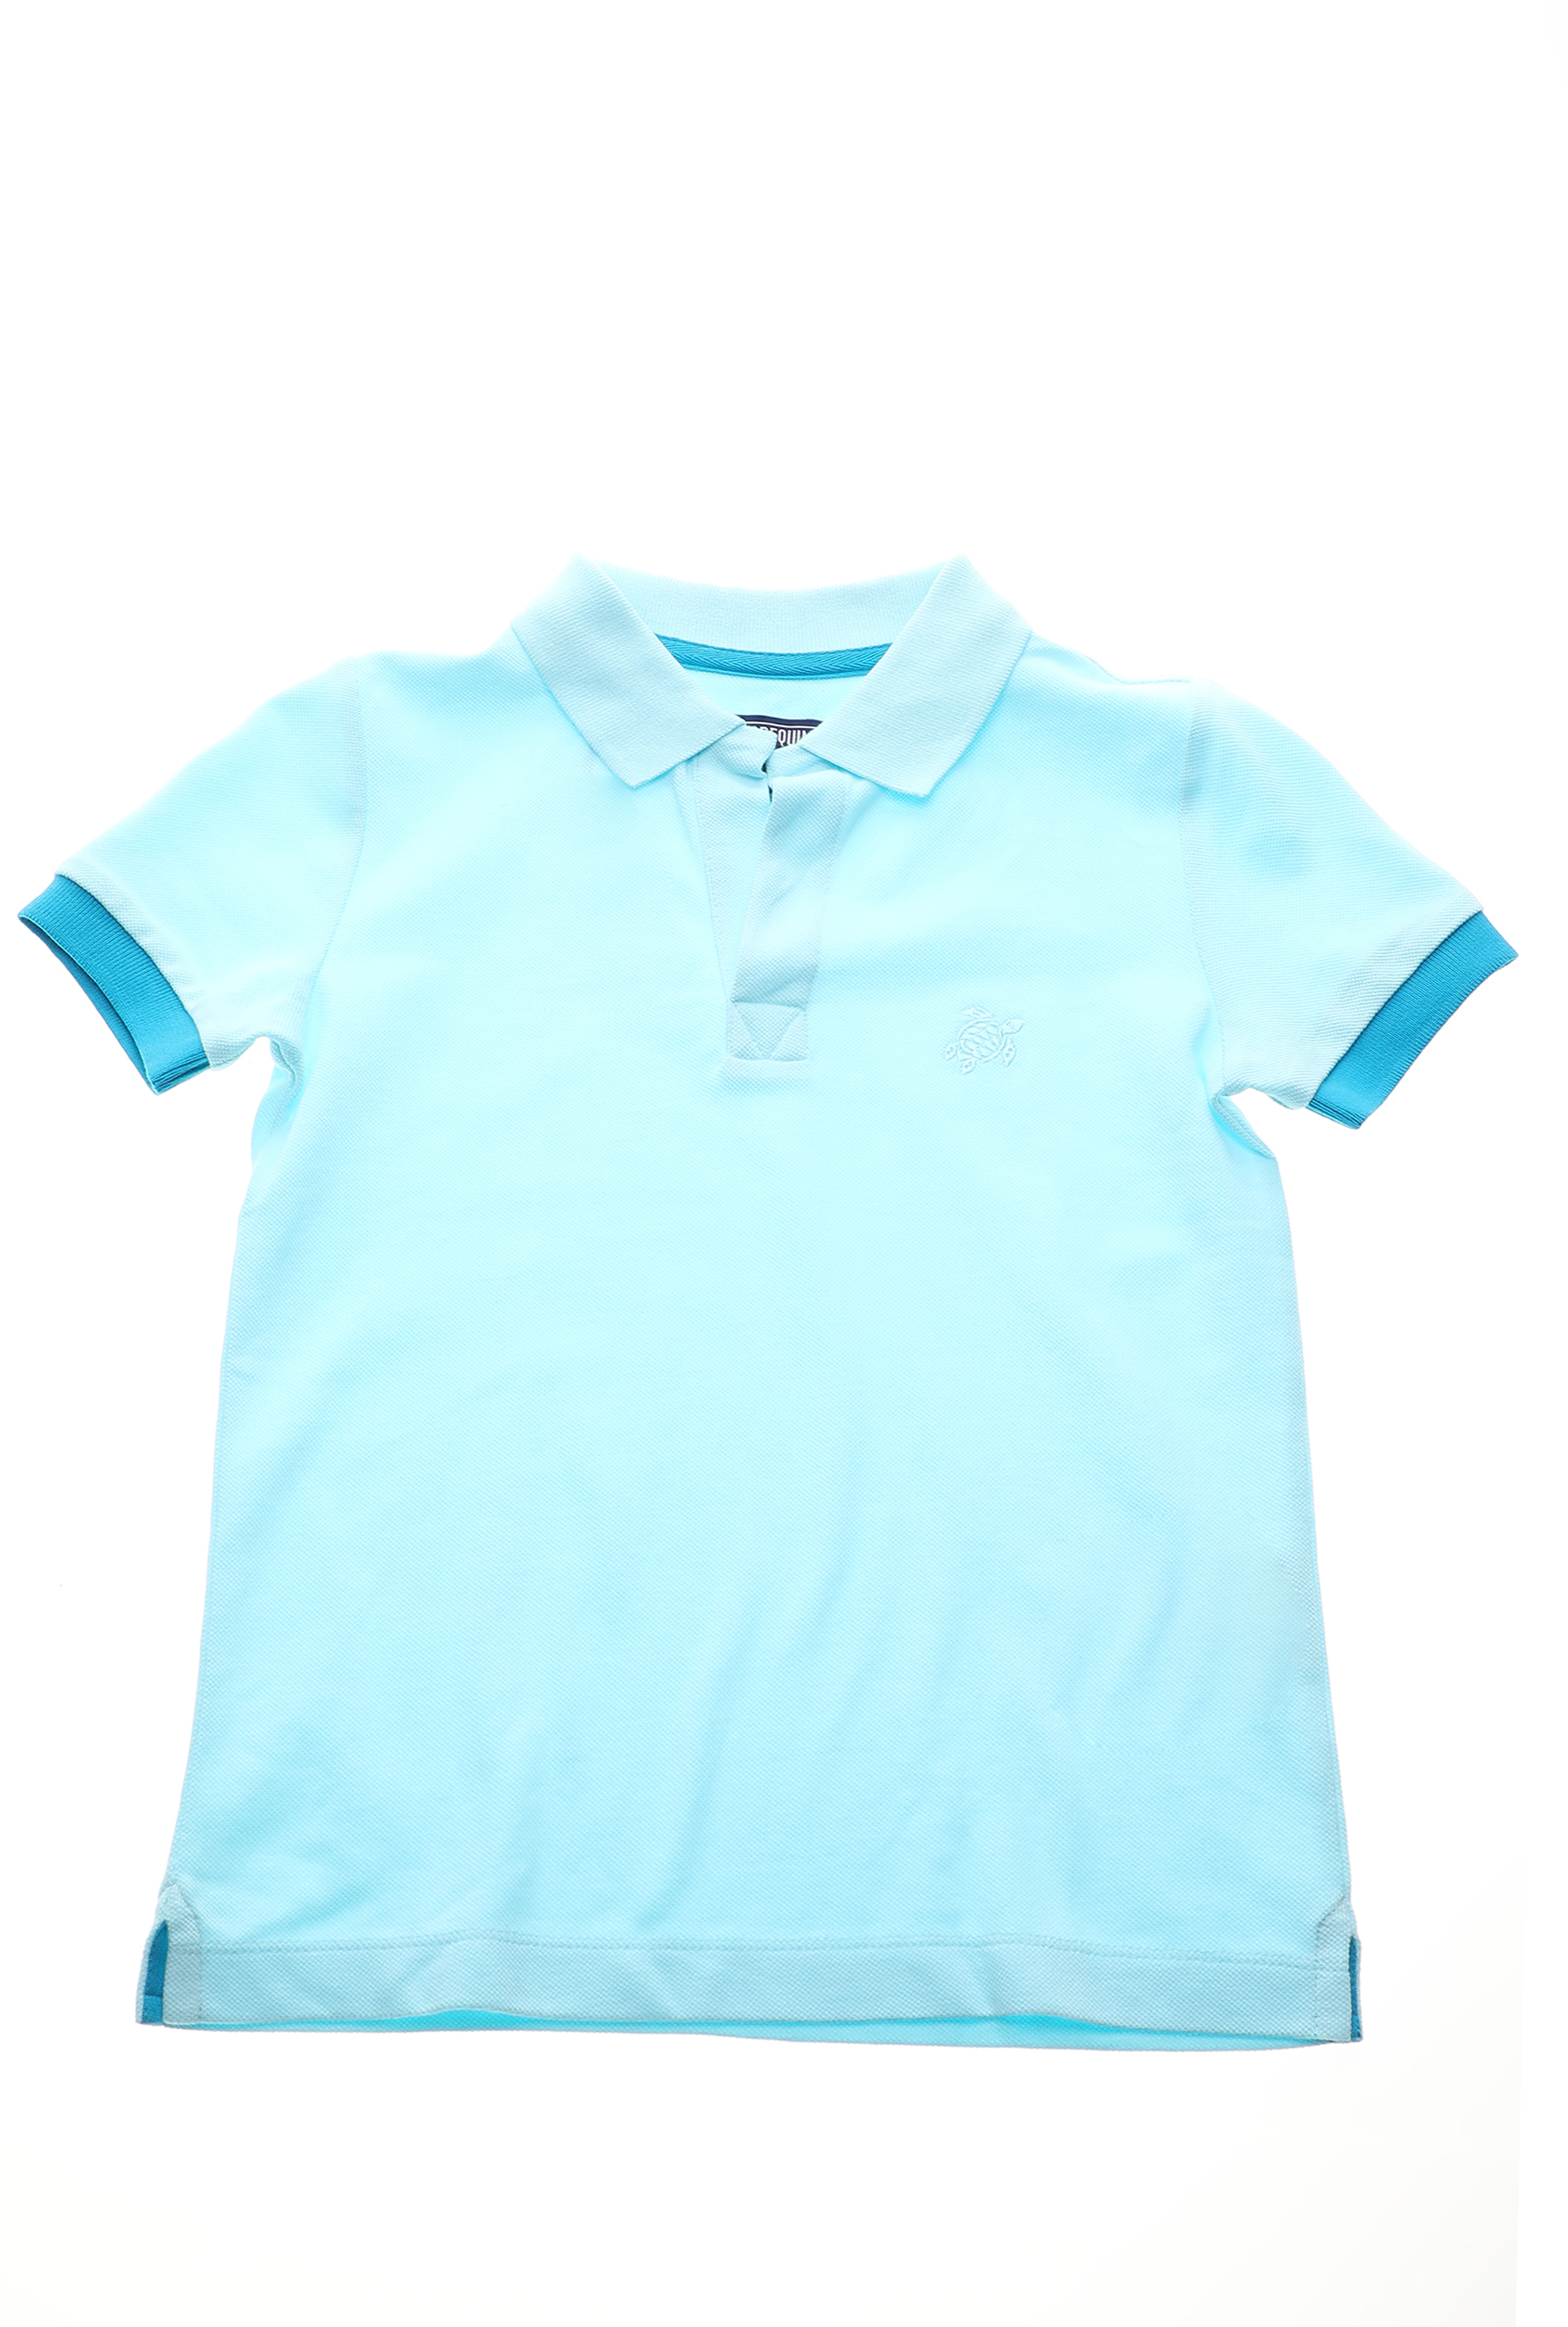 Παιδικά/Boys/Ρούχα/Μπλούζες VILEBREQUIN - Παιδική polo μπλούζα VILEBREQUIN PANTIN μπλε